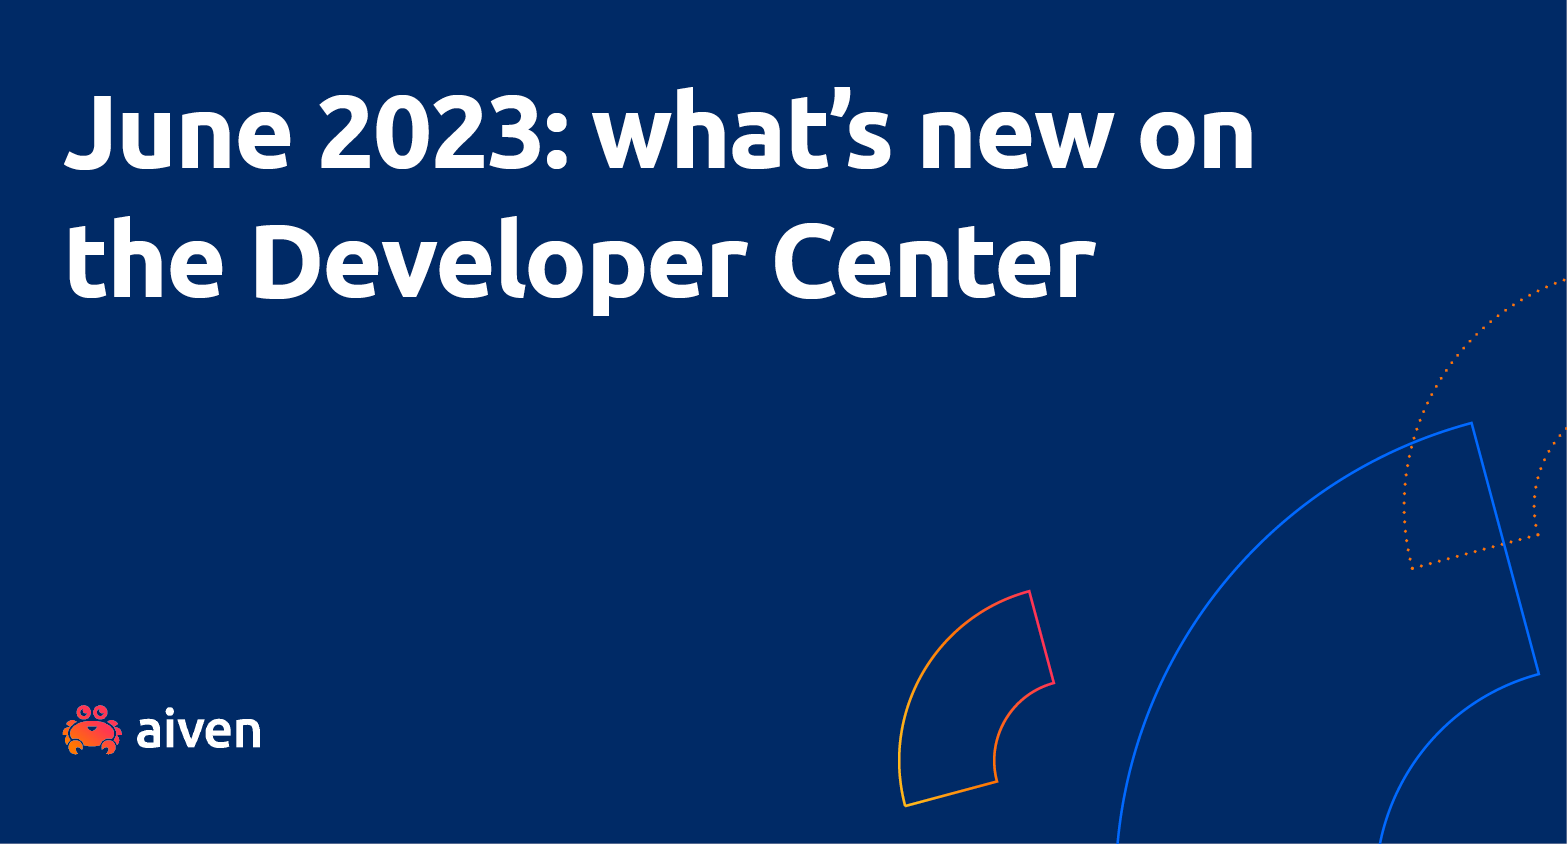 June 2023: what's new on the Developer Center